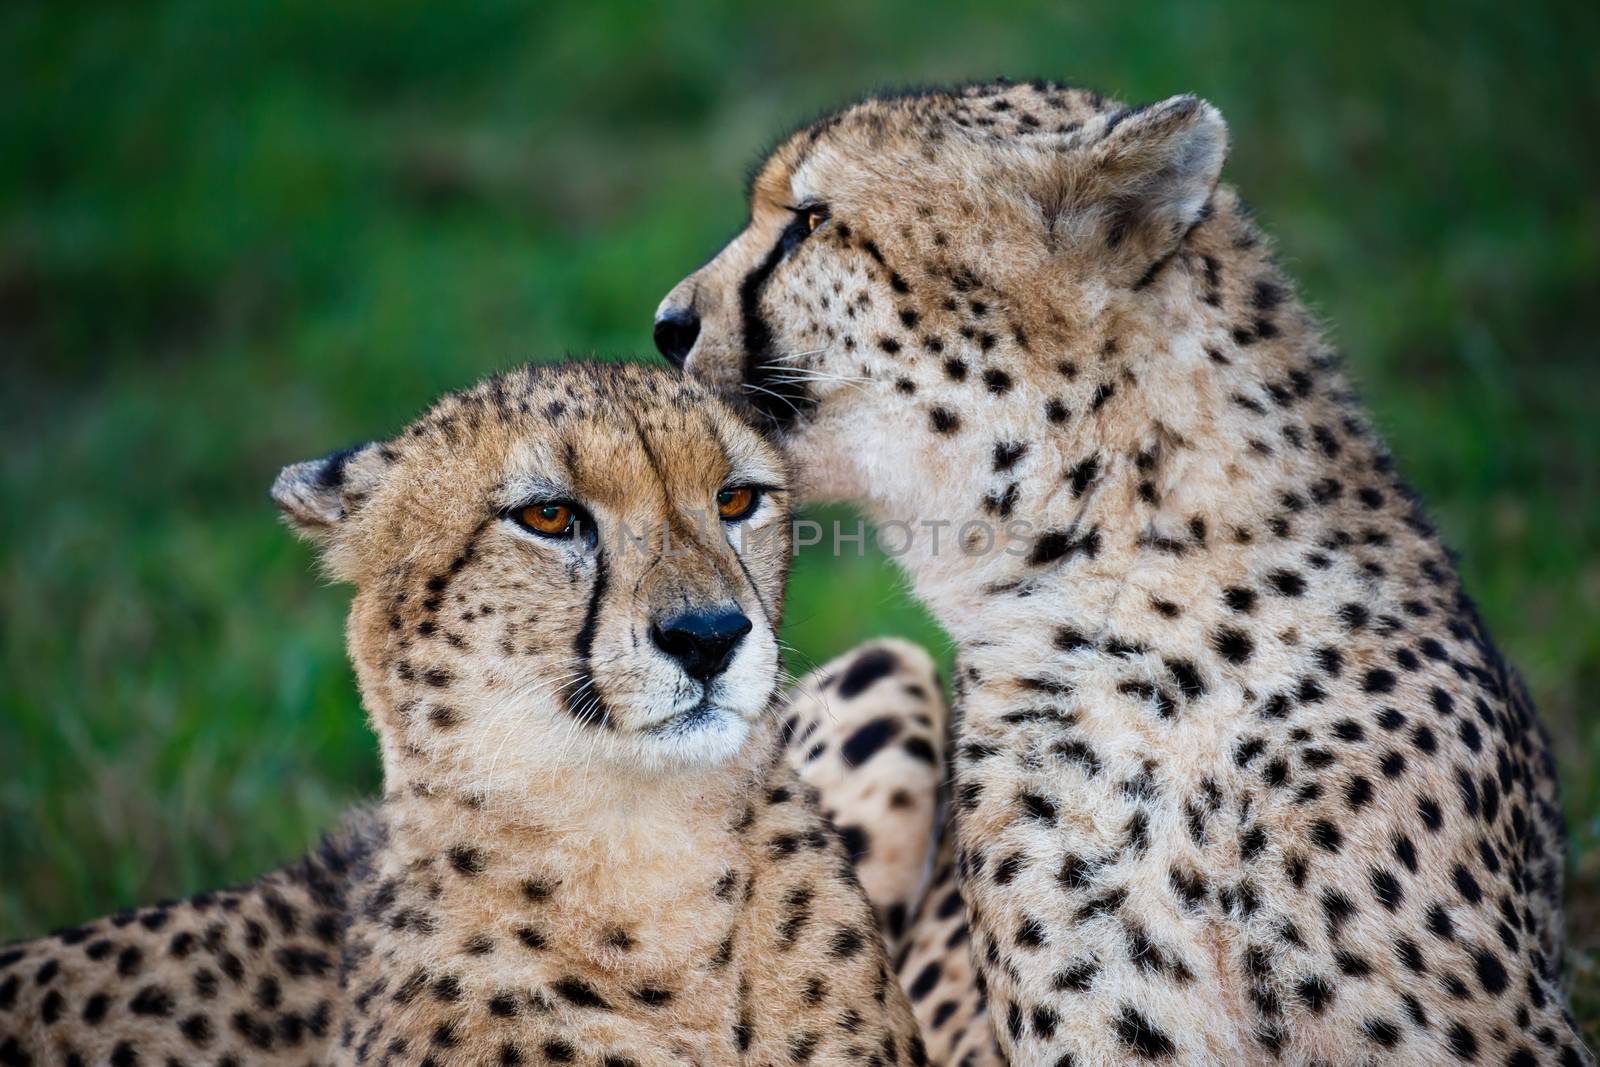 Cheetah Wild Cat Pair by fouroaks